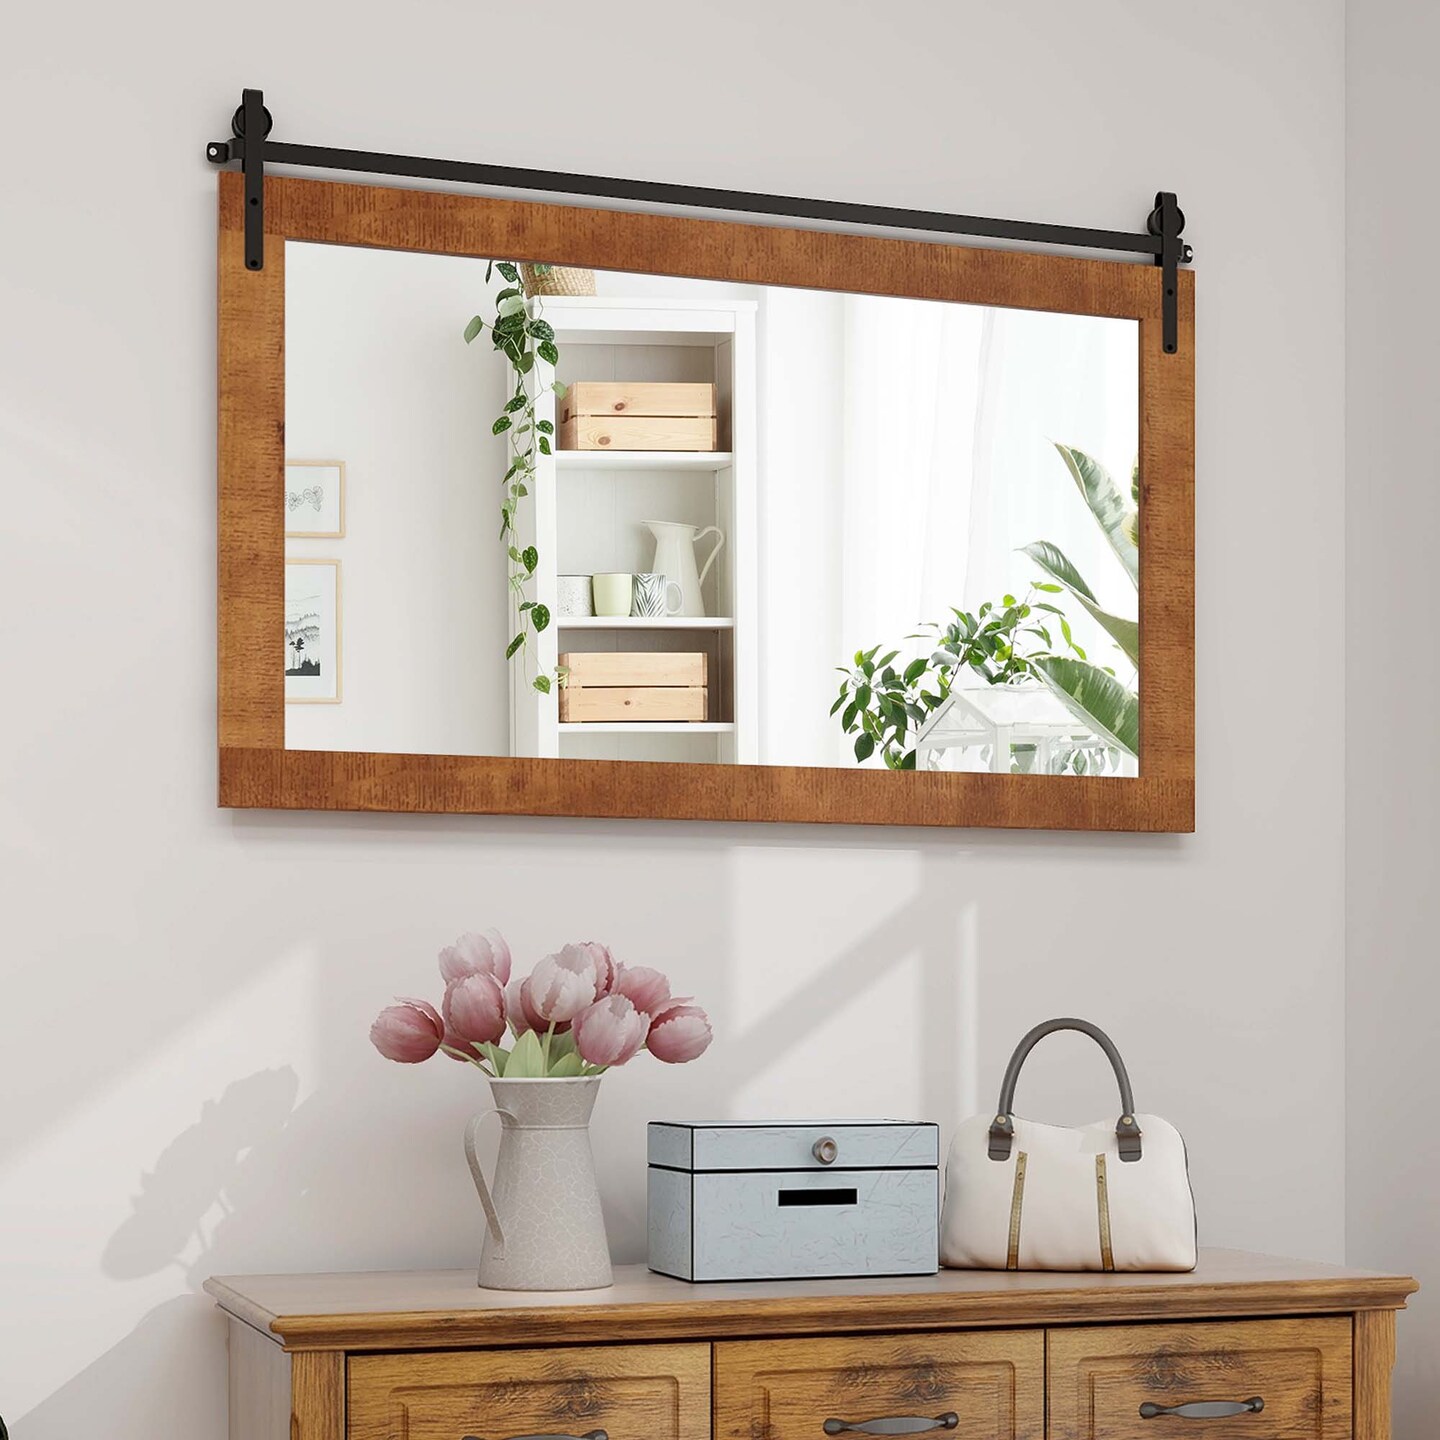 Costway Farmhouse Bathroom Wall Mounted Mirror 40&#x27;&#x27; x 26&#x27;&#x27; Explosion-proof Fir Wood Frame